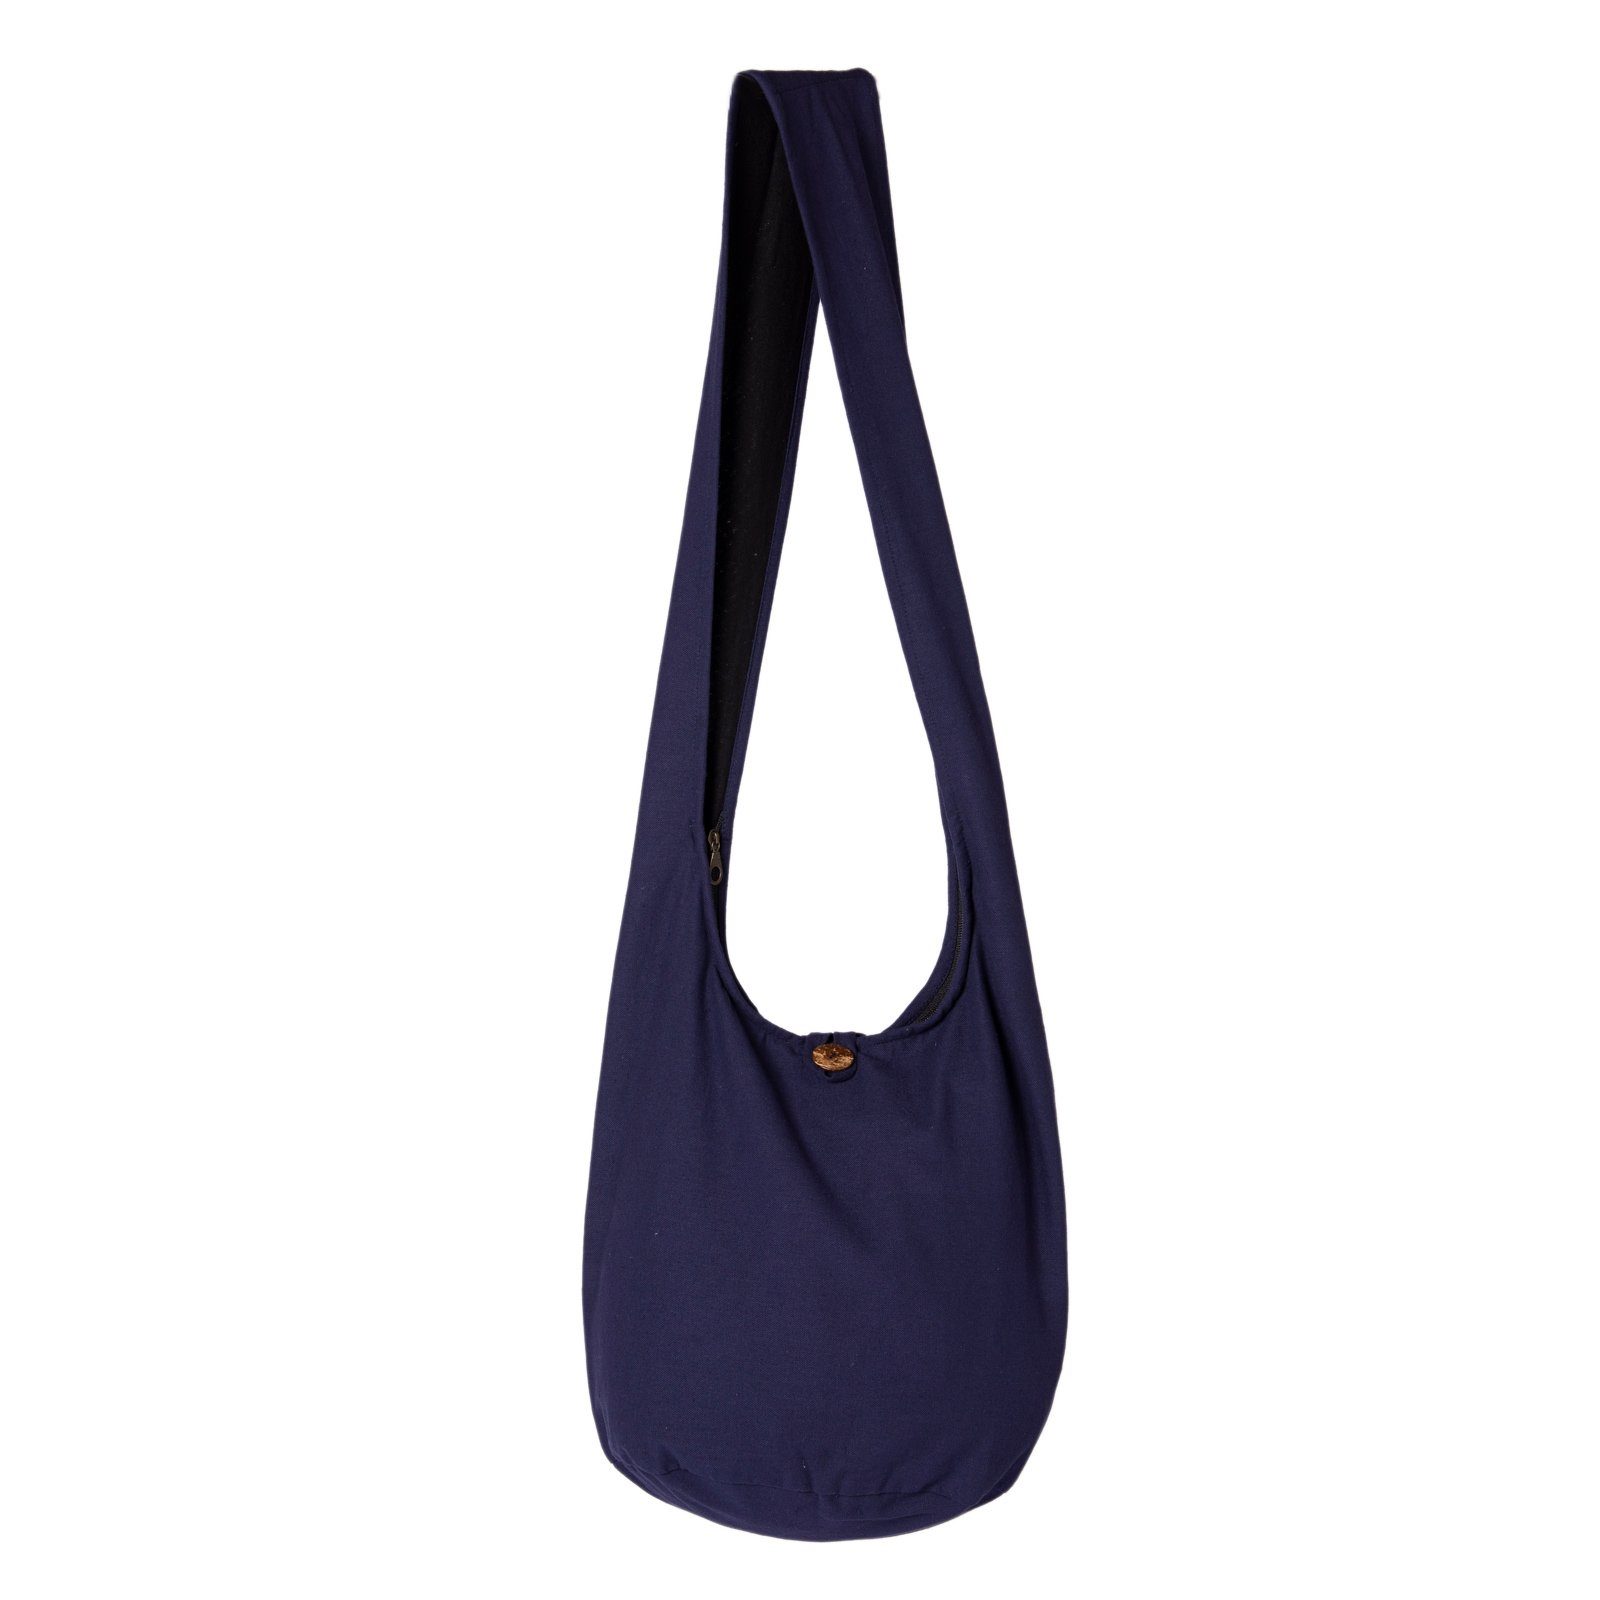 Beuteltasche Umhängetasche dunkel einfarbig Wickeltasche 100% PANASIAM in als Baumwolle oder Handtasche blau 2 Größen, Schultertasche Strandtasche aus auch Schulterbeutel